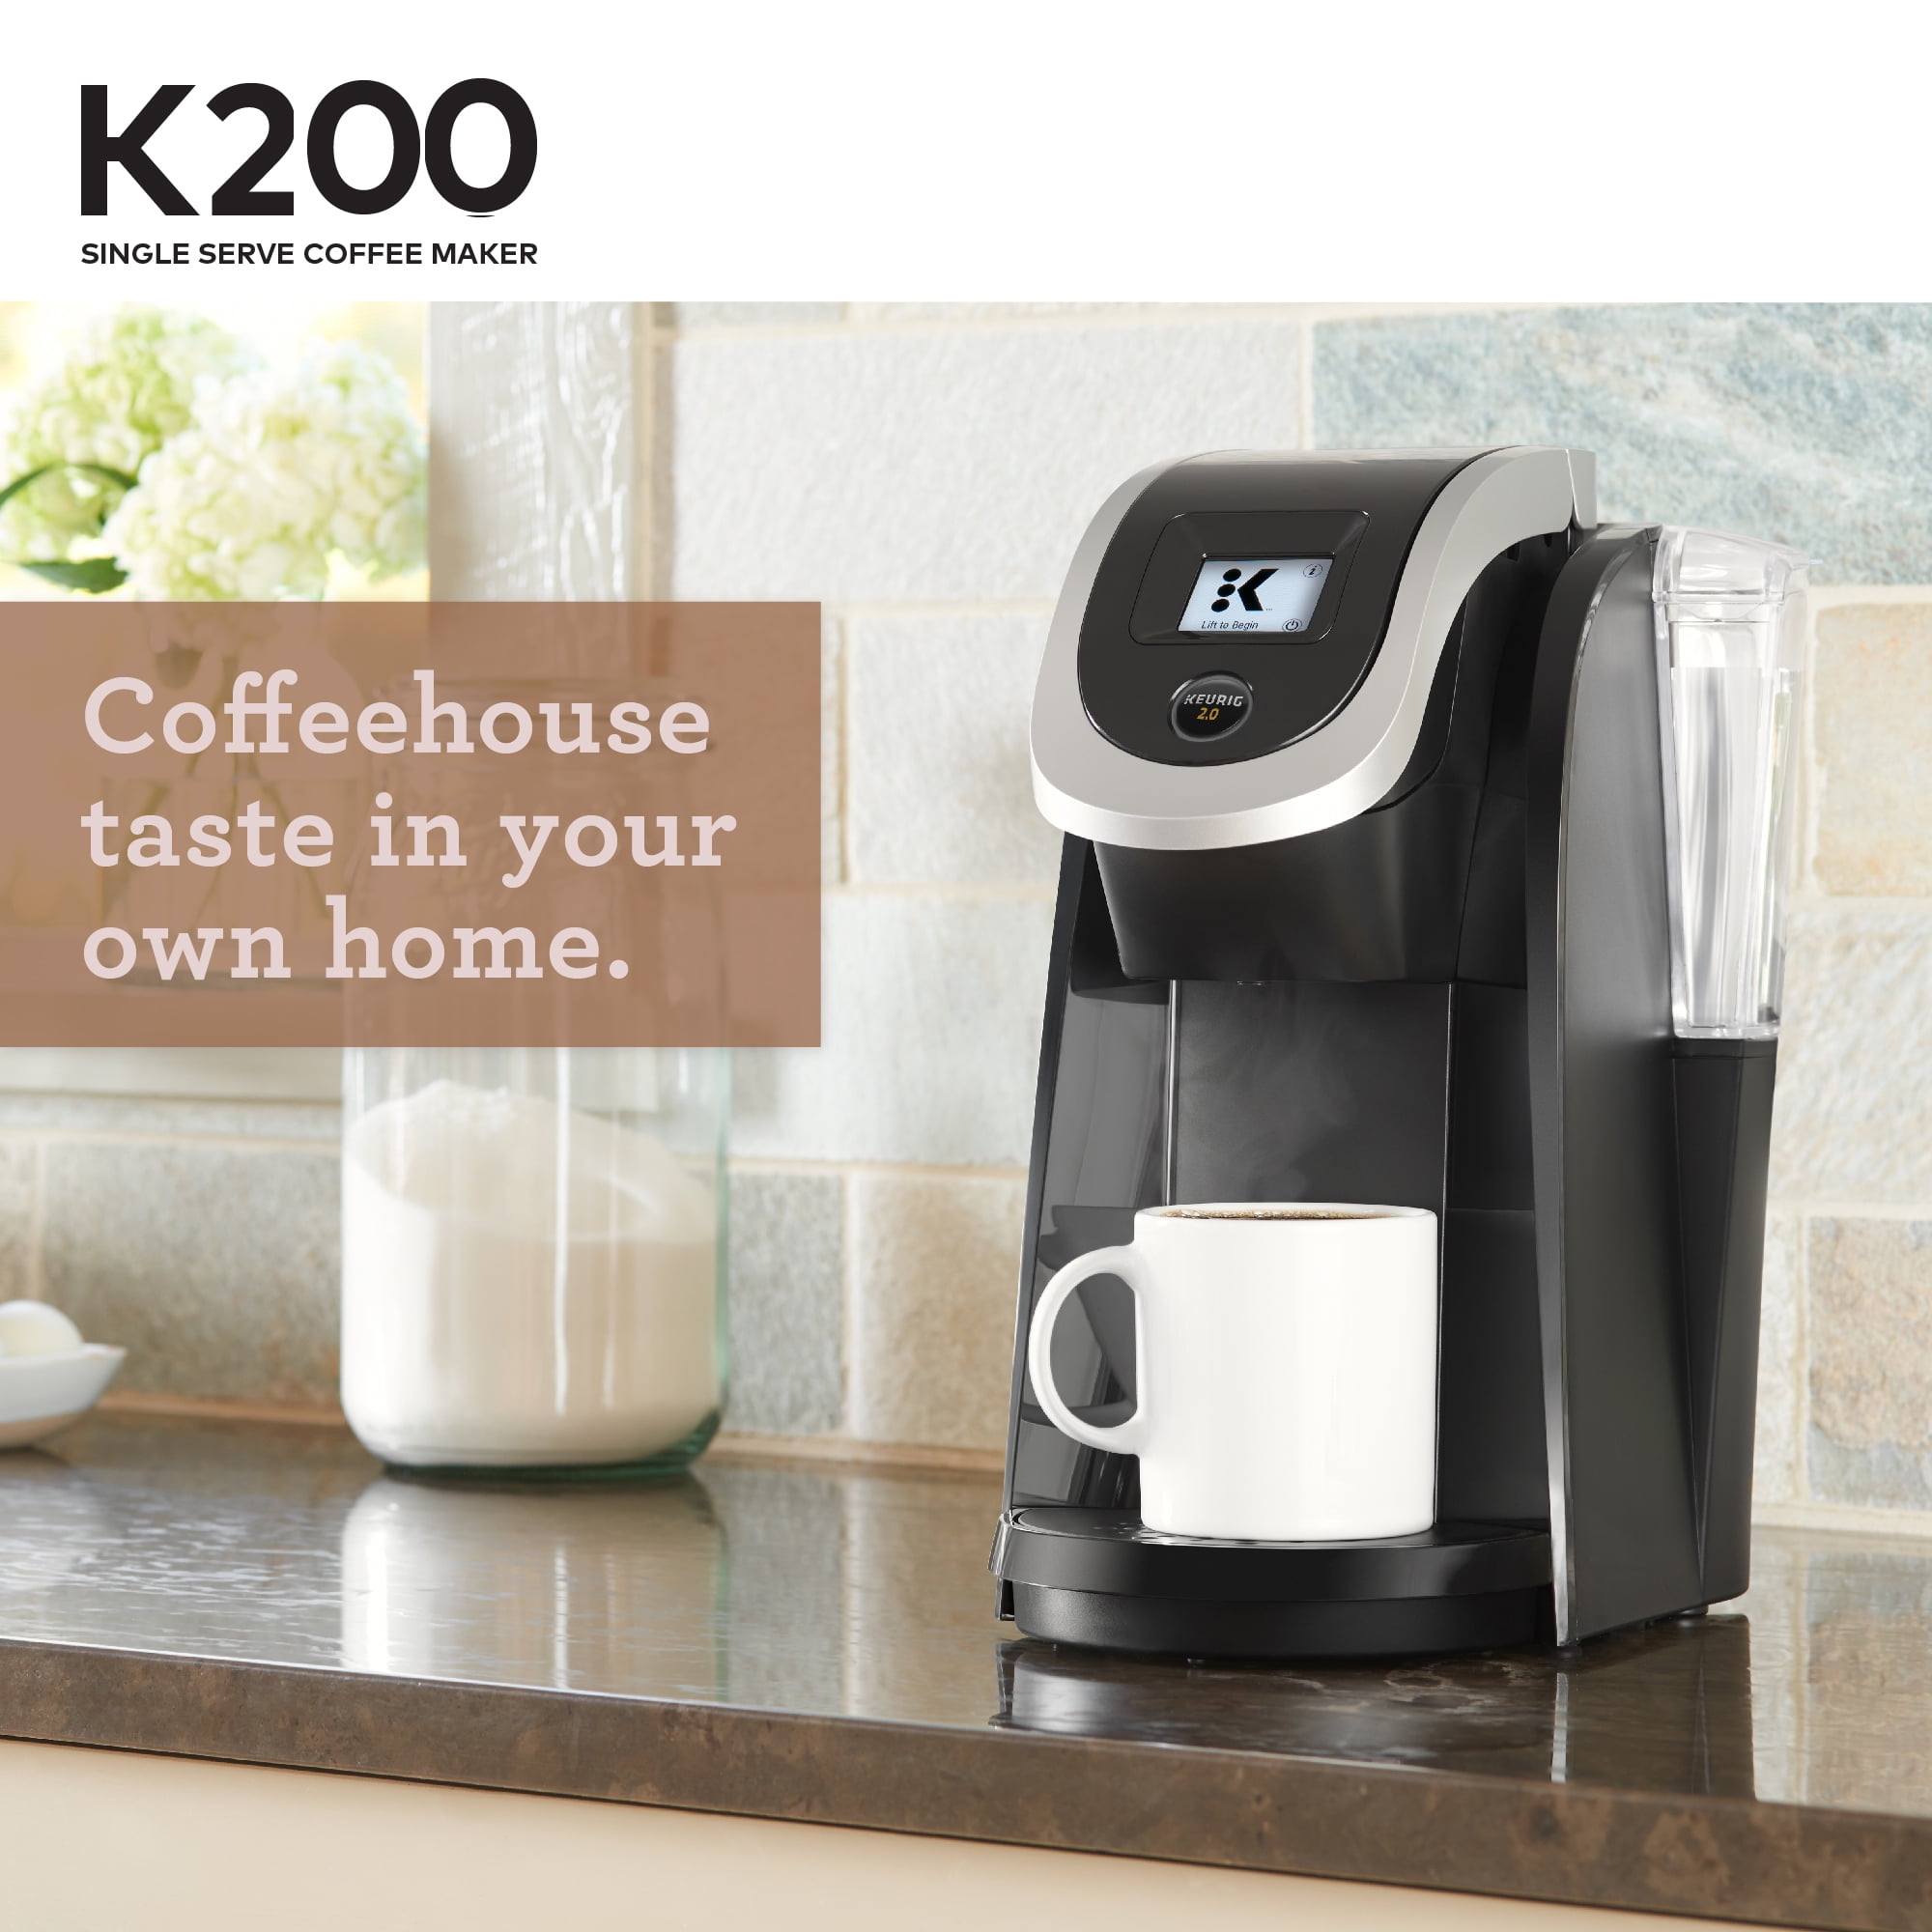 Keurig 2.0 K200 Coffee Maker Brewing System Black for sale online